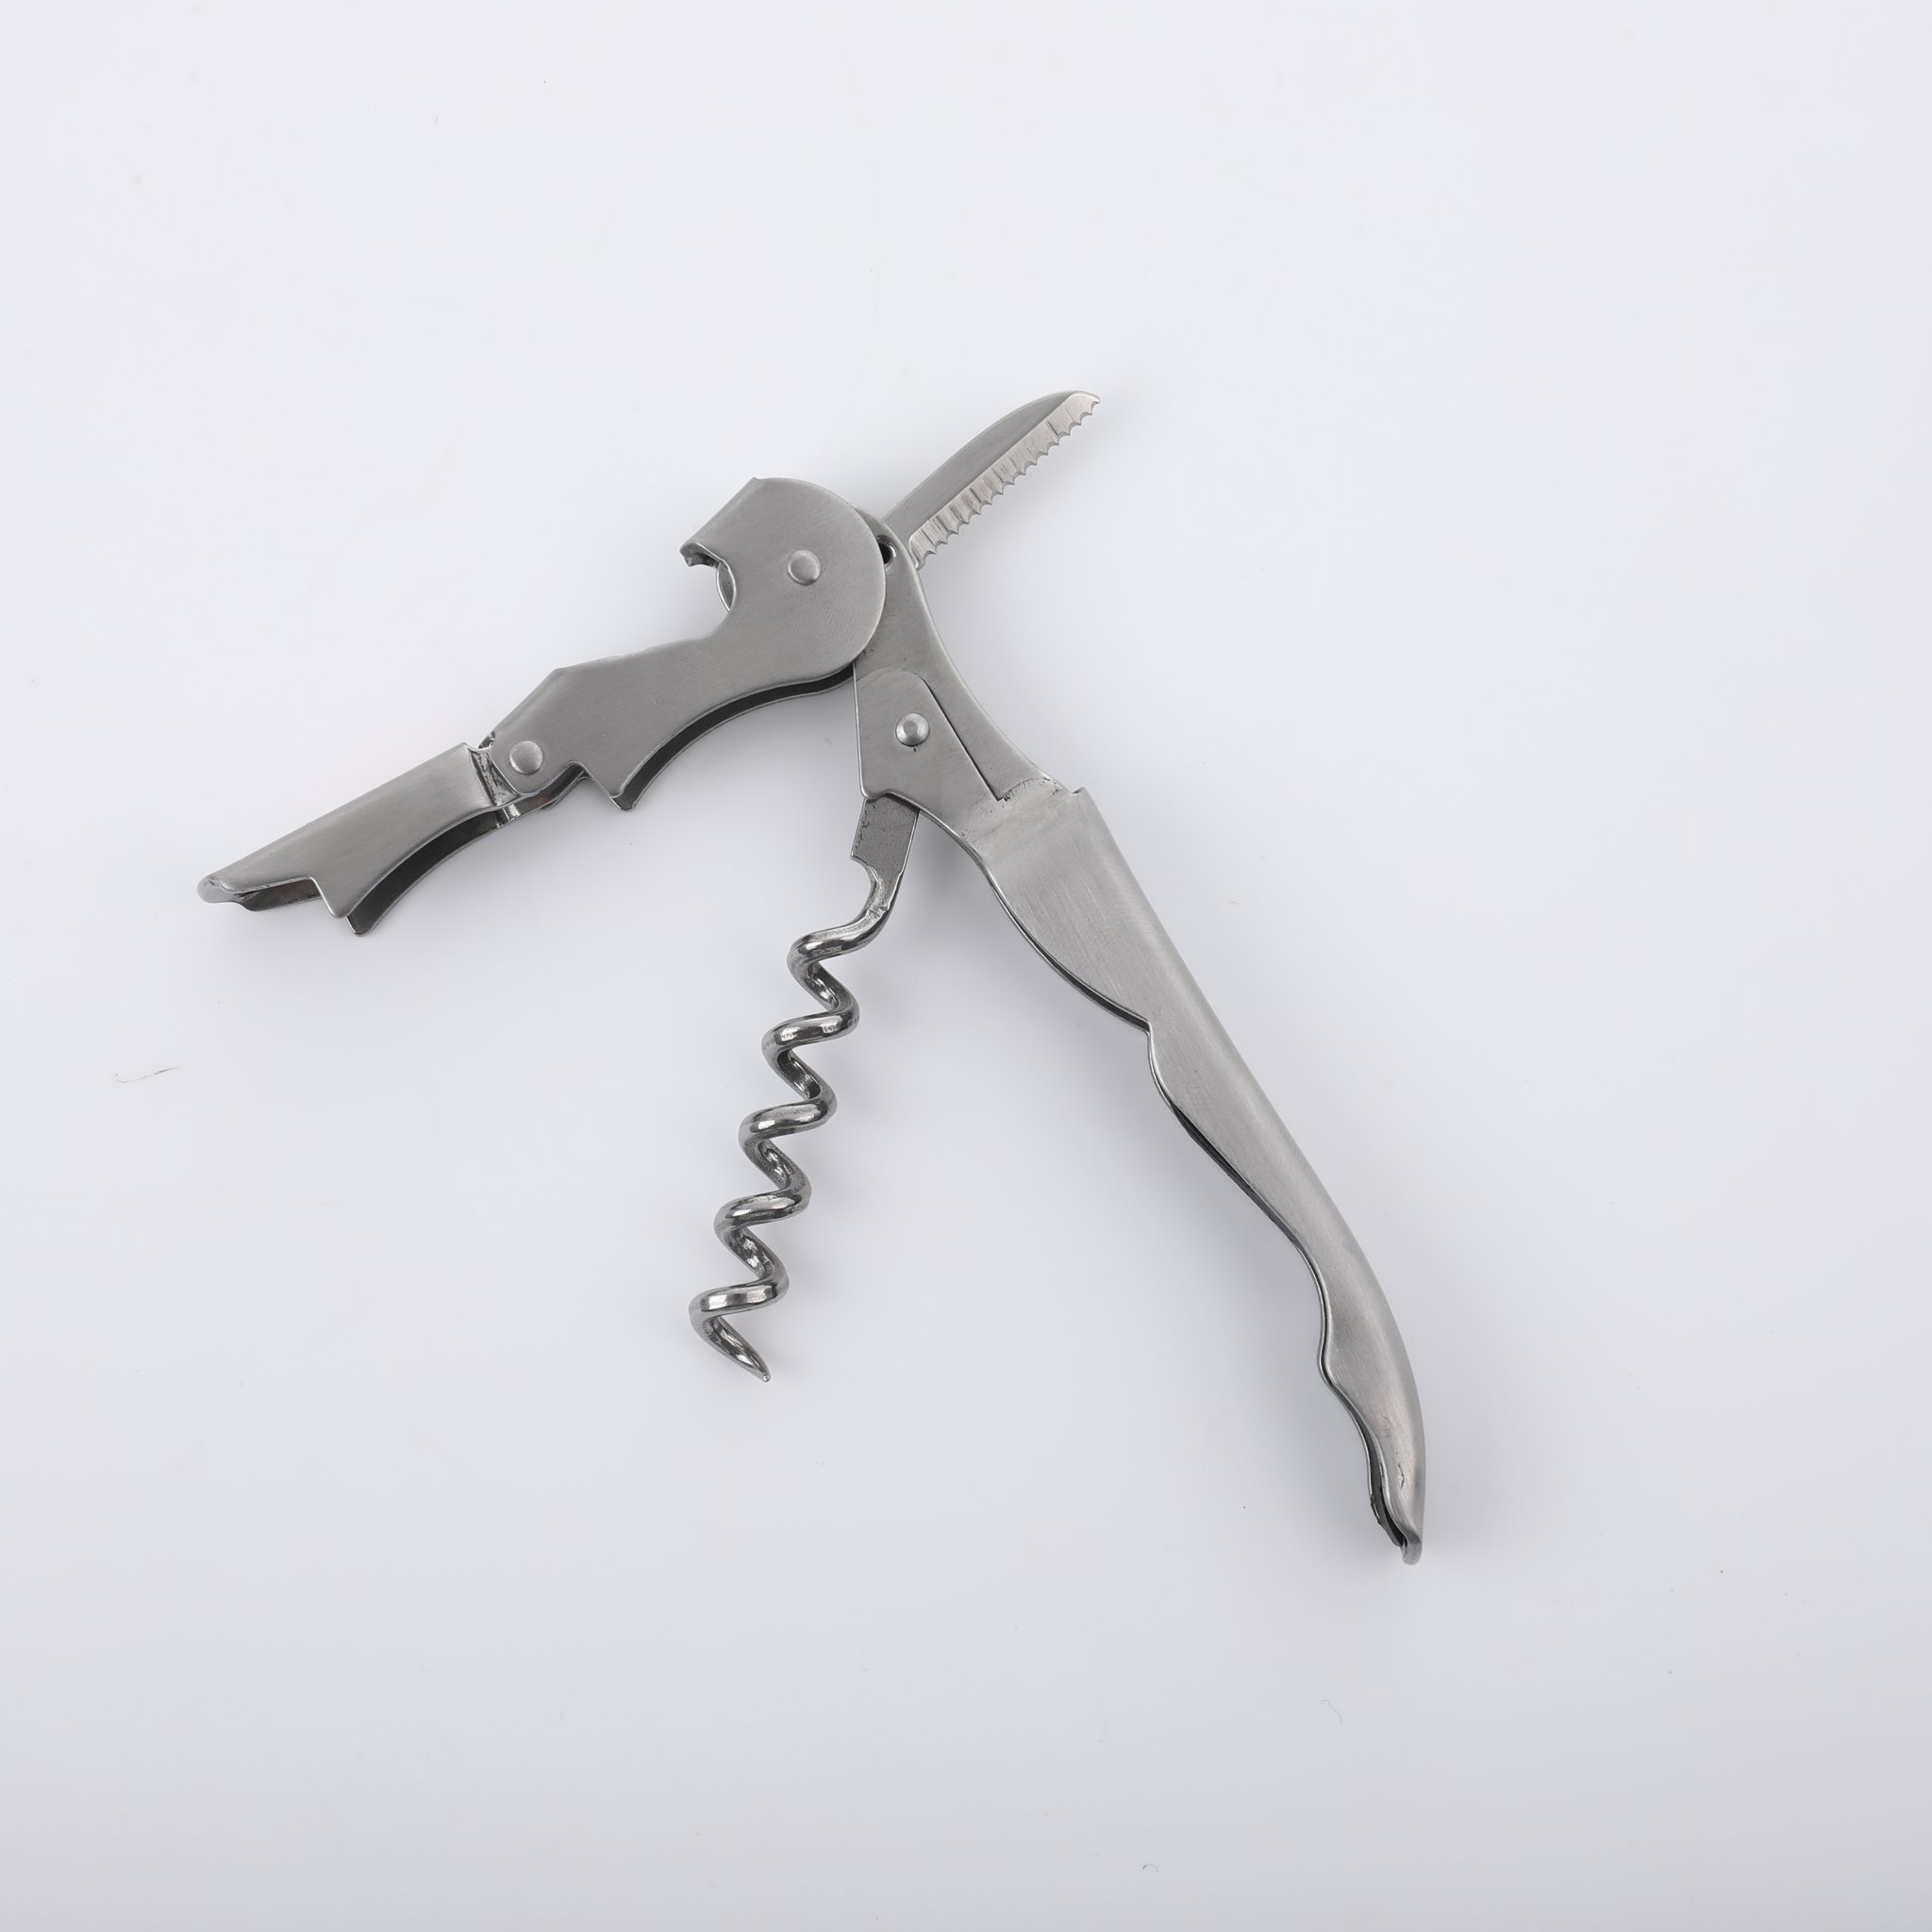 Pocket Knife With Corkscrew2